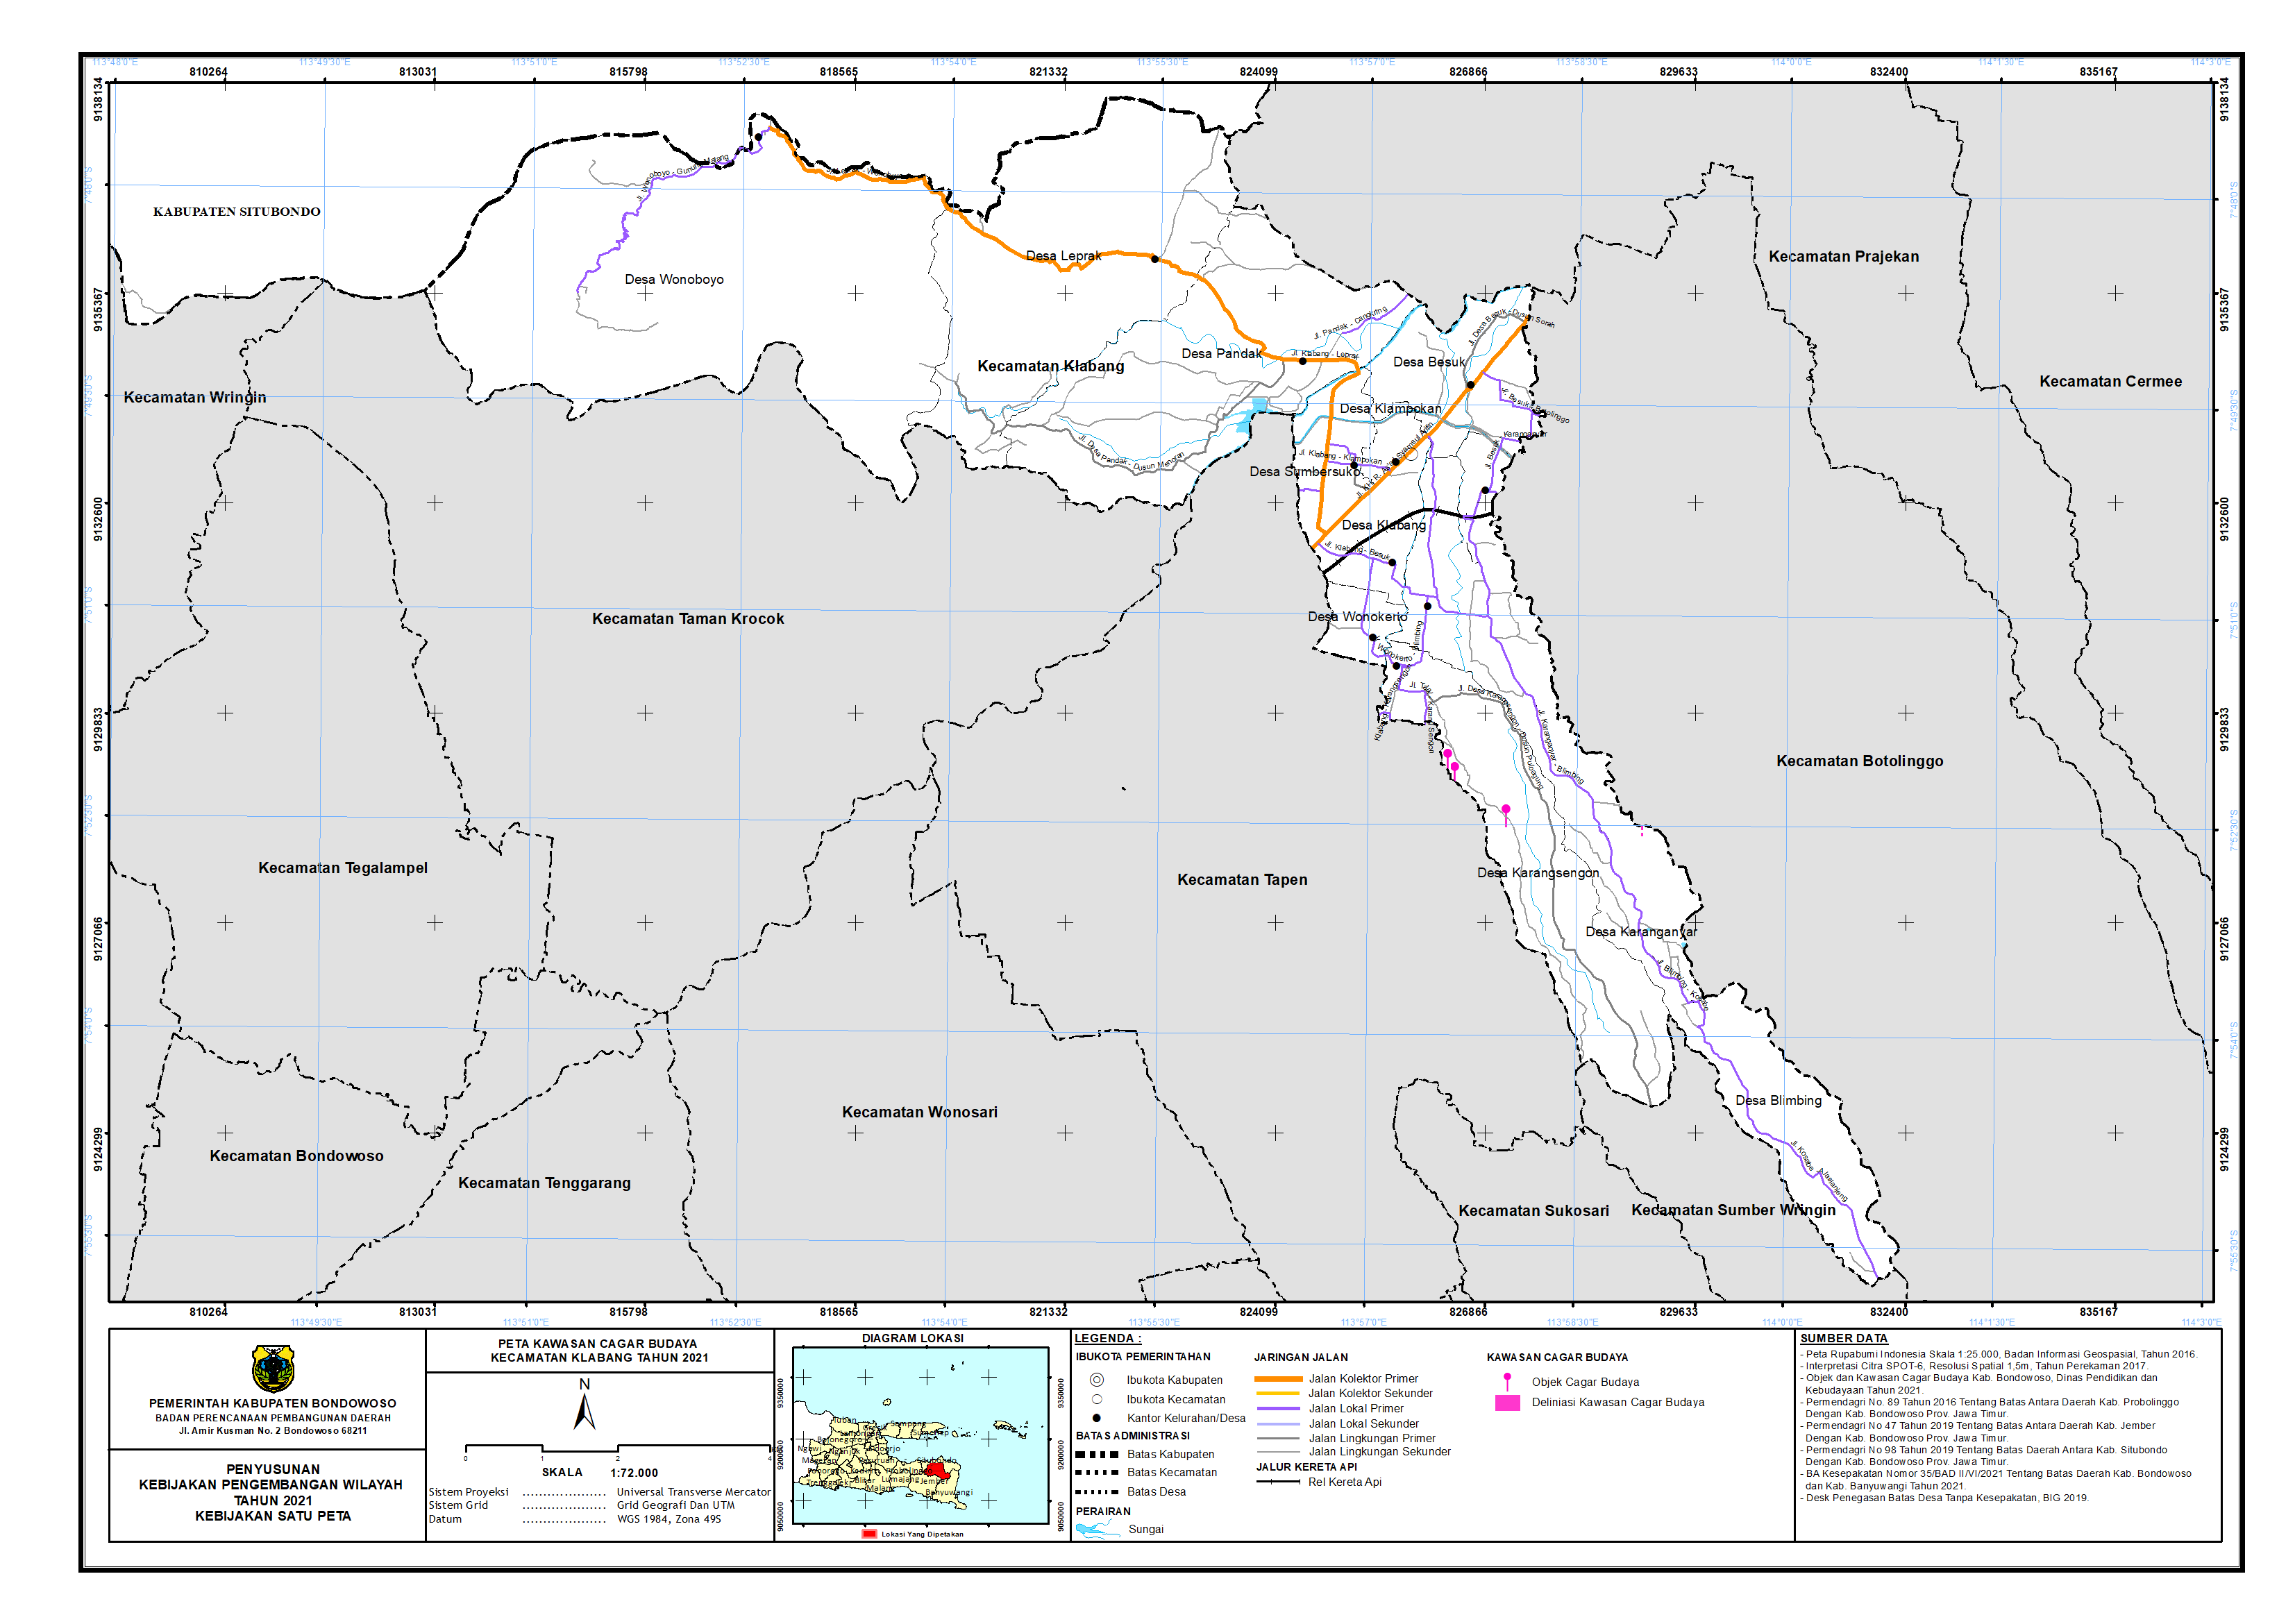 Peta Kawasan Cagar Budaya Kecamatan Klabang.png